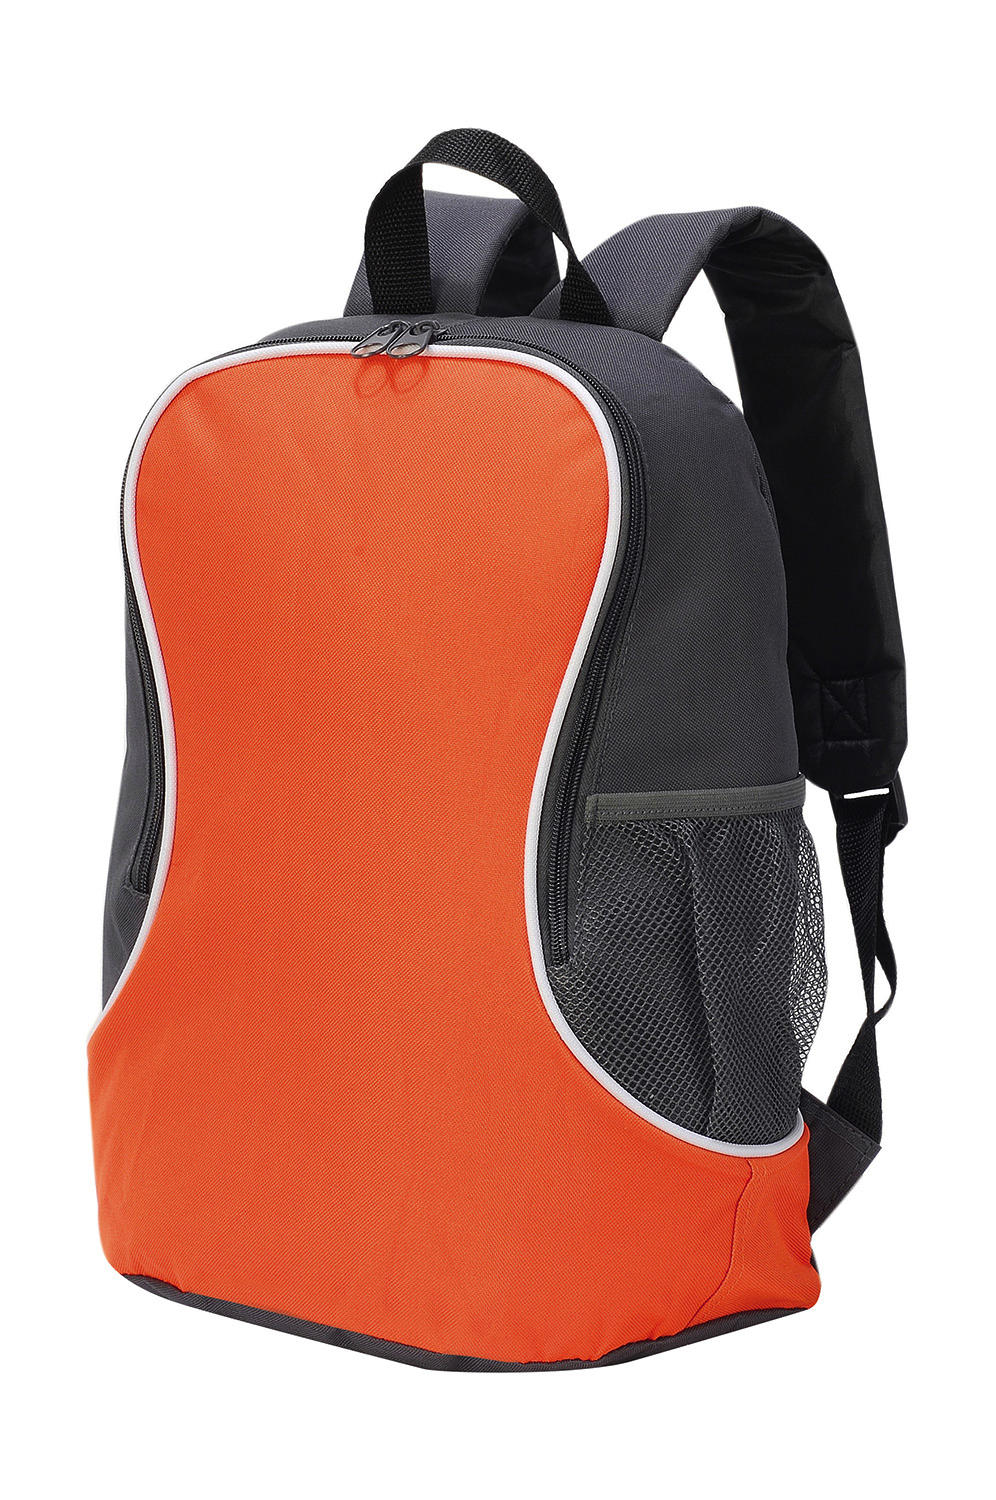  Fuji Basic Backpack in Farbe Orange/Dark Grey